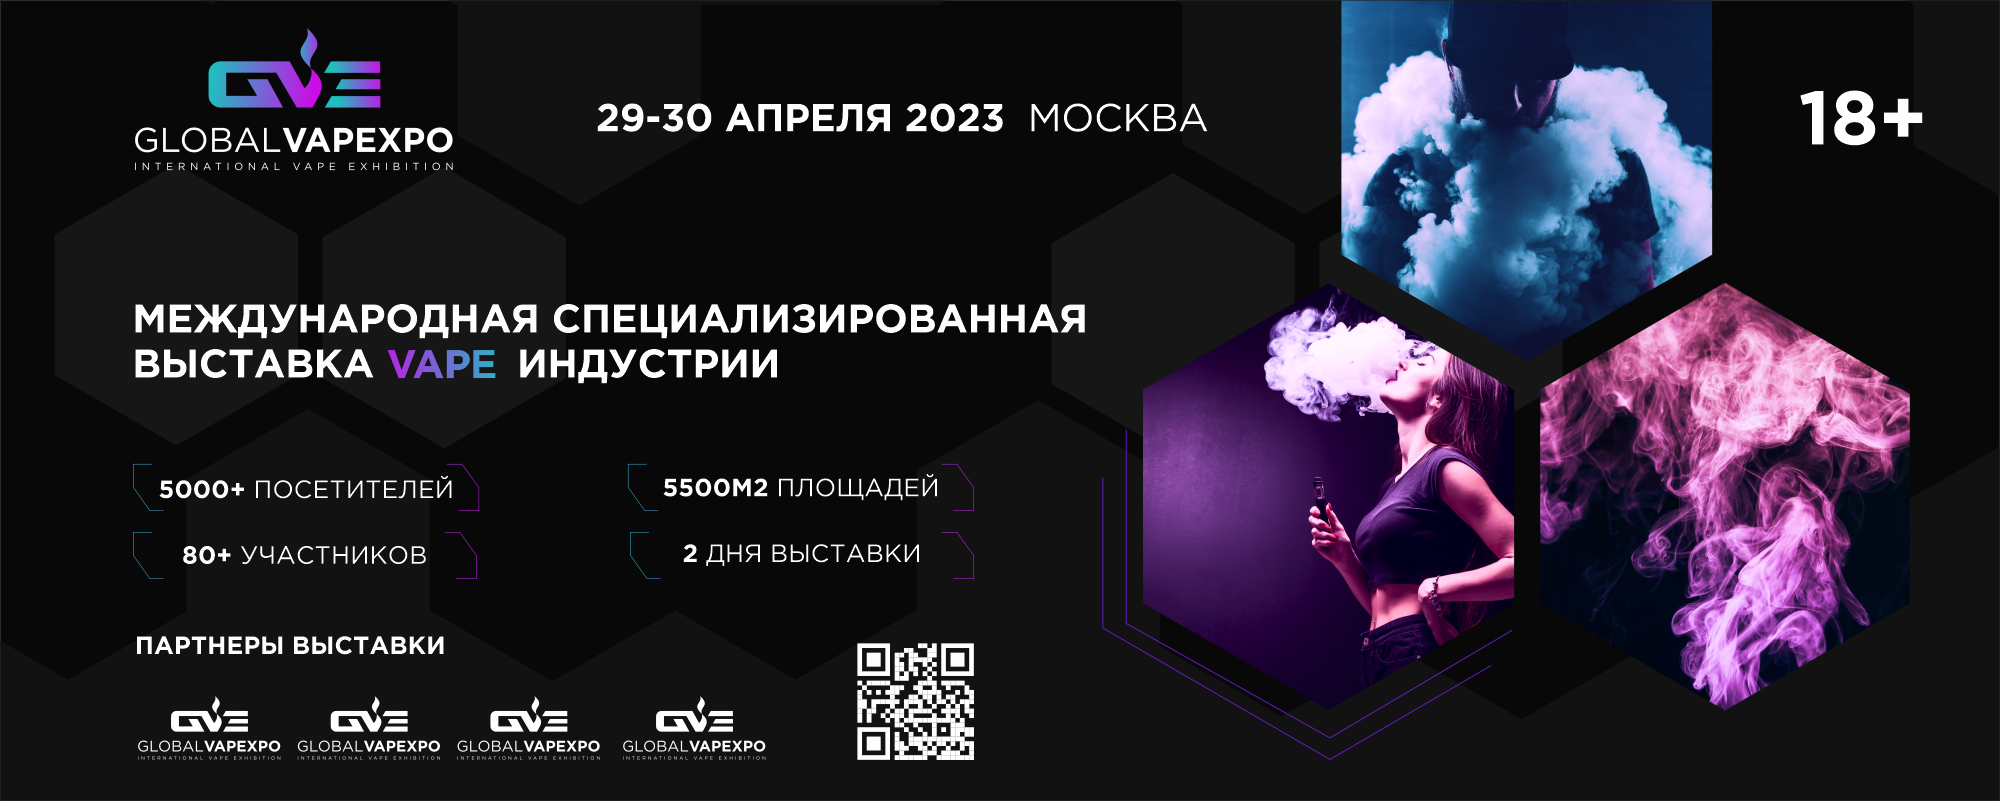 GLOBALVAPEXPO: первые подробности о выставке, которая должна пройти в конце апреля в Москве